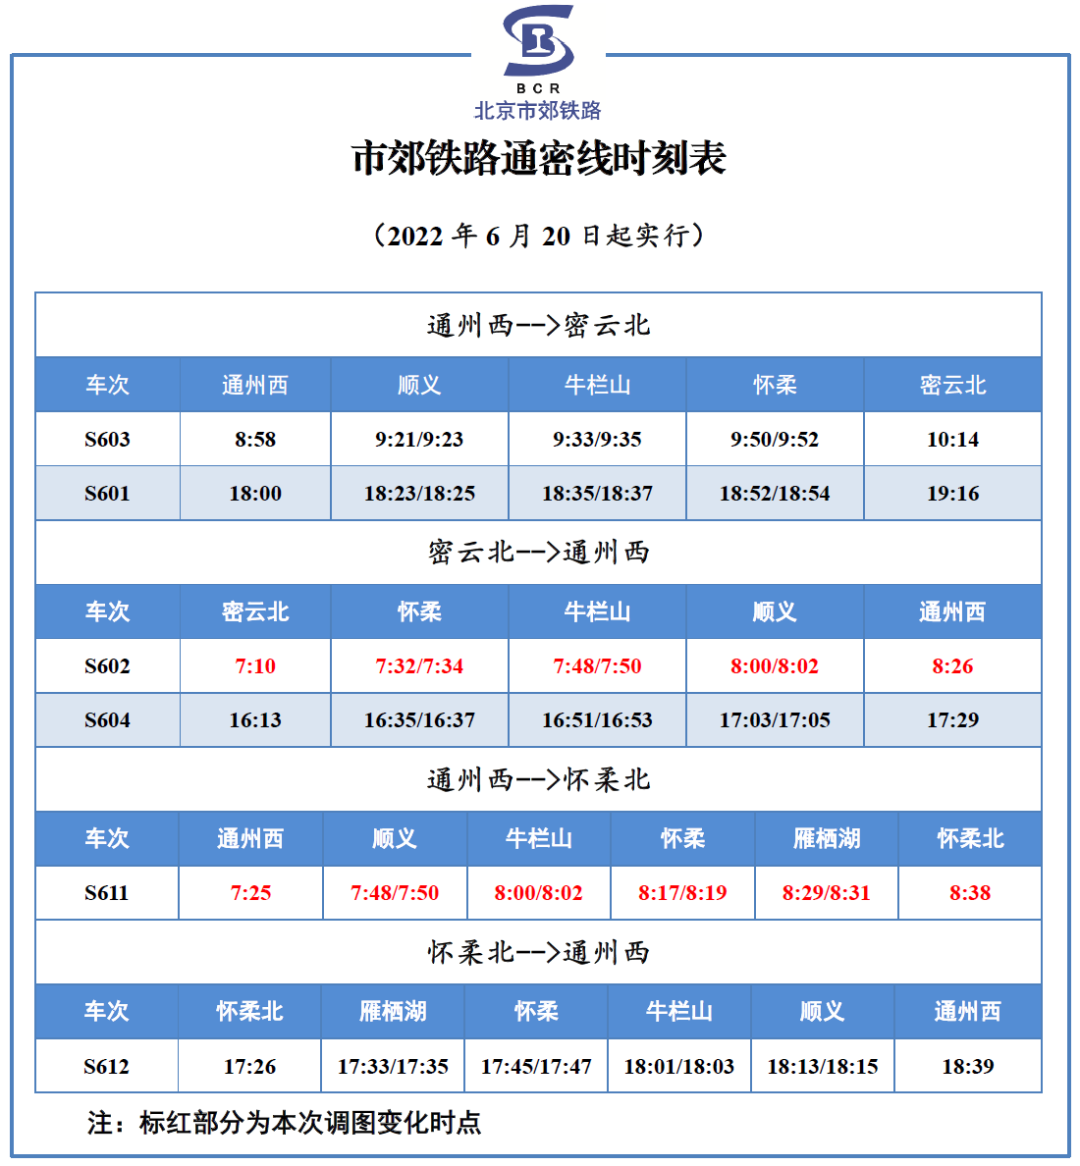 2021年10月11日起北京S2线最新时刻表- 北京本地宝